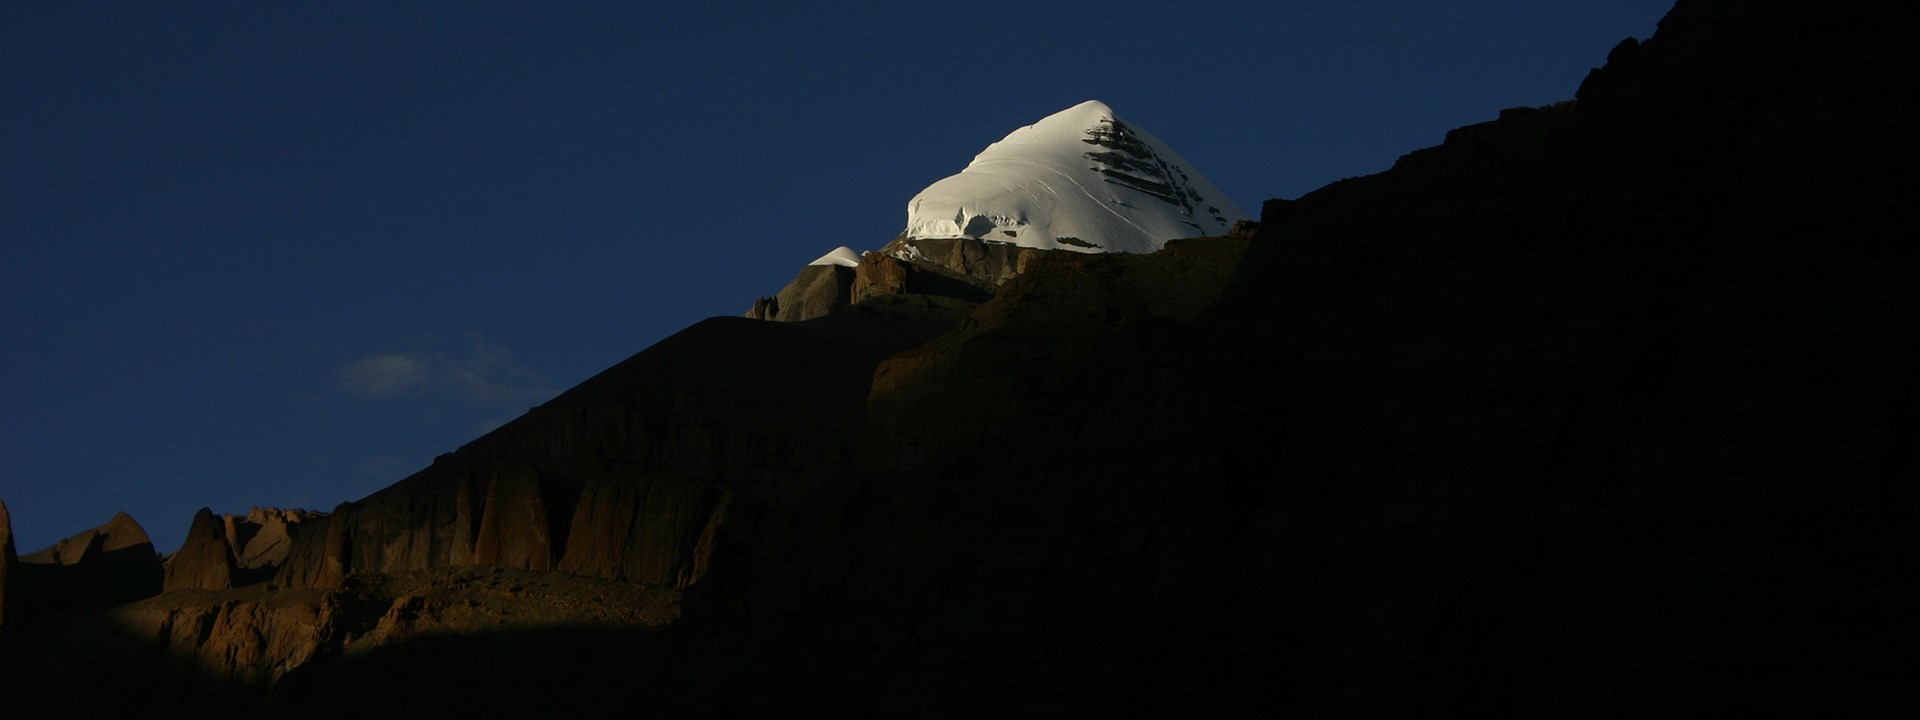 Picco di Kangringboqe (Kailash)